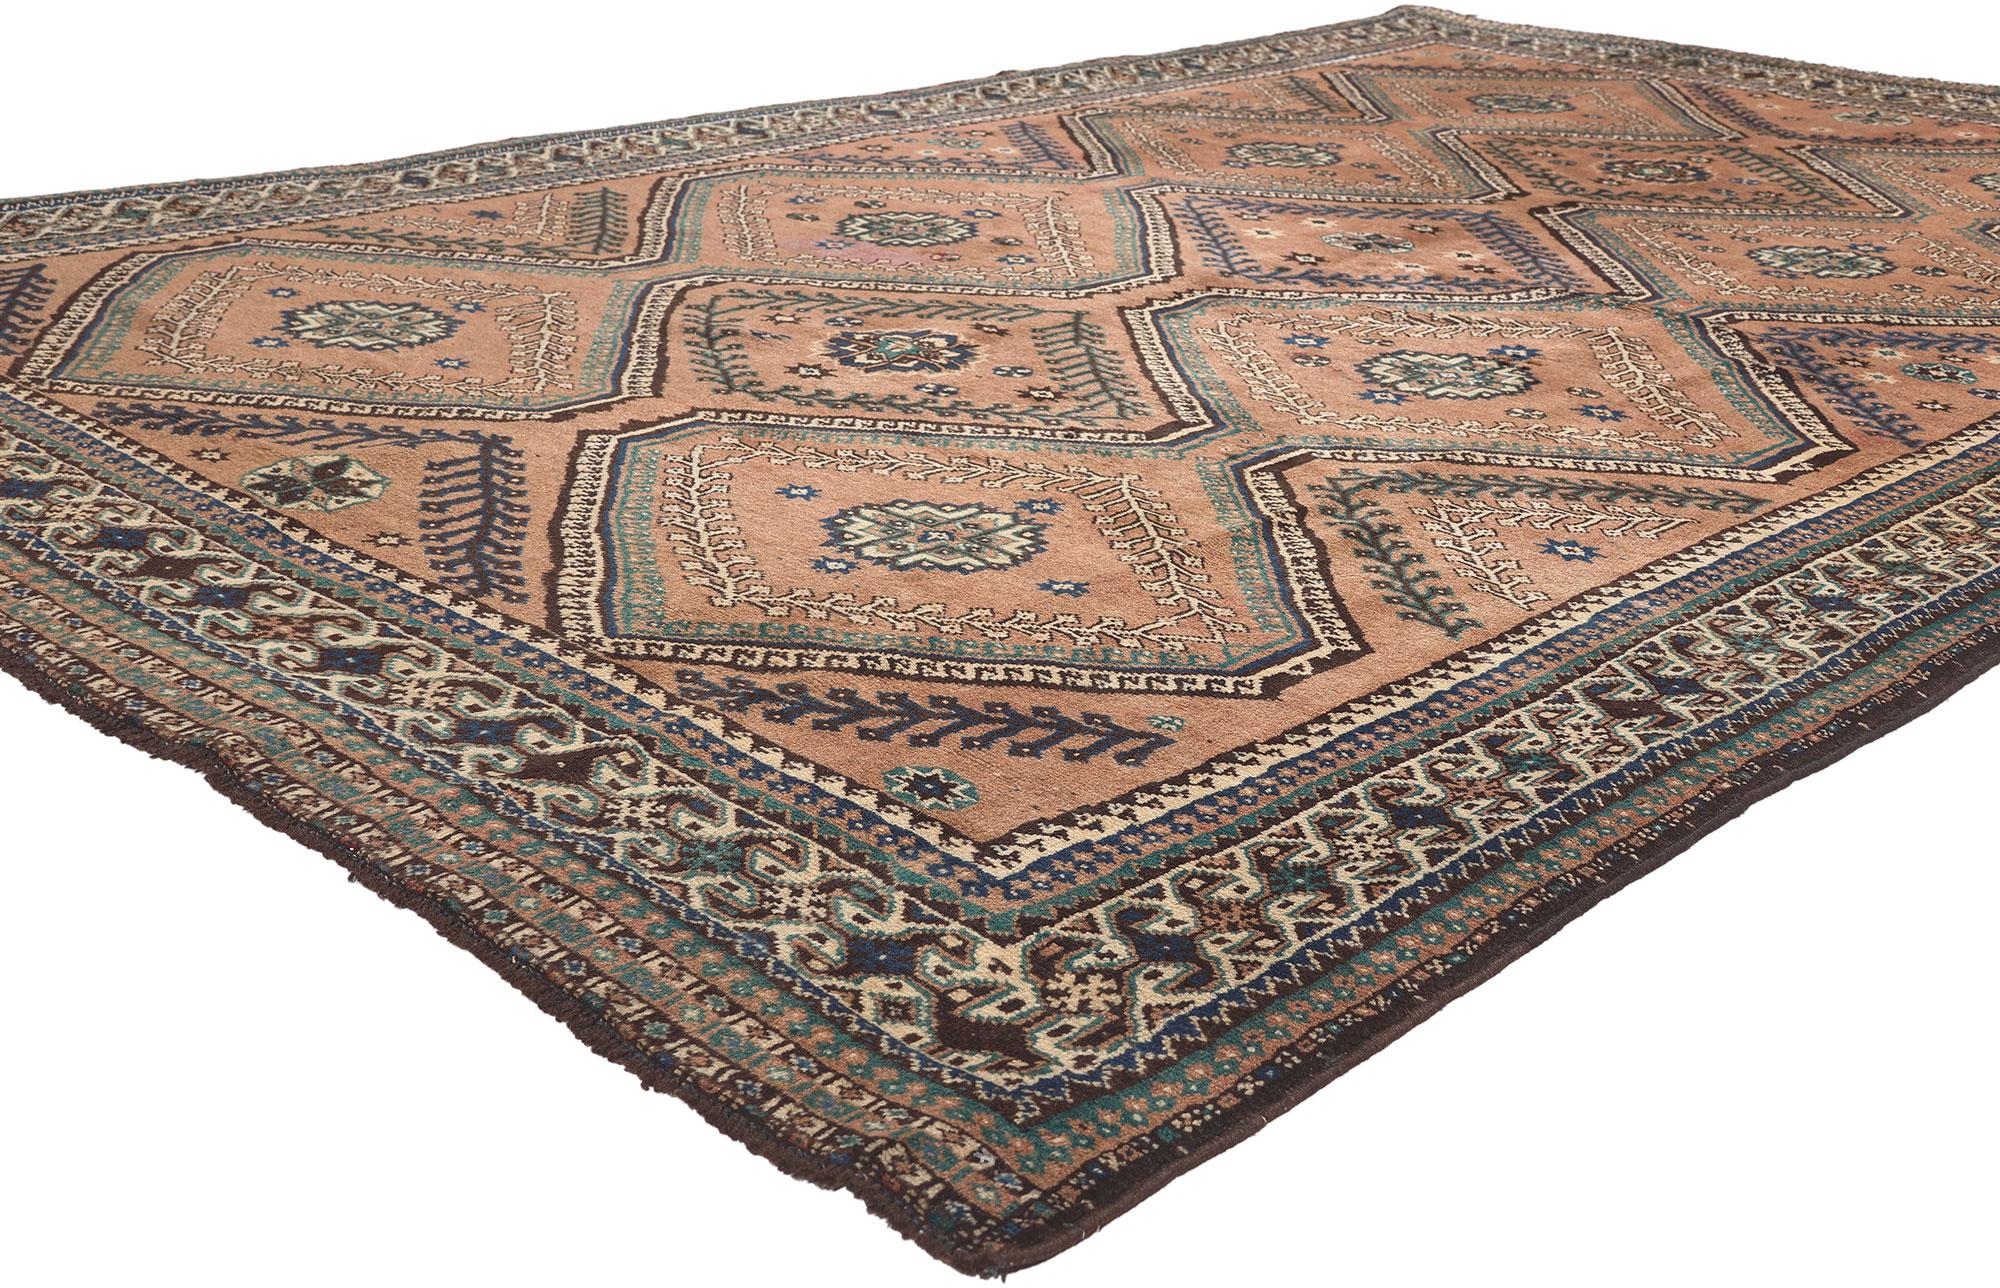 75926 Tapis Vintage Persan Shiraz, 06'05 X 10'05. 
Un nomade douillet rencontre un charme envoûtant dans ce tapis Shiraz persan vintage en laine noué à la main. Le treillis tribal et les teintes chaudes et terreuses tissés dans cette pièce